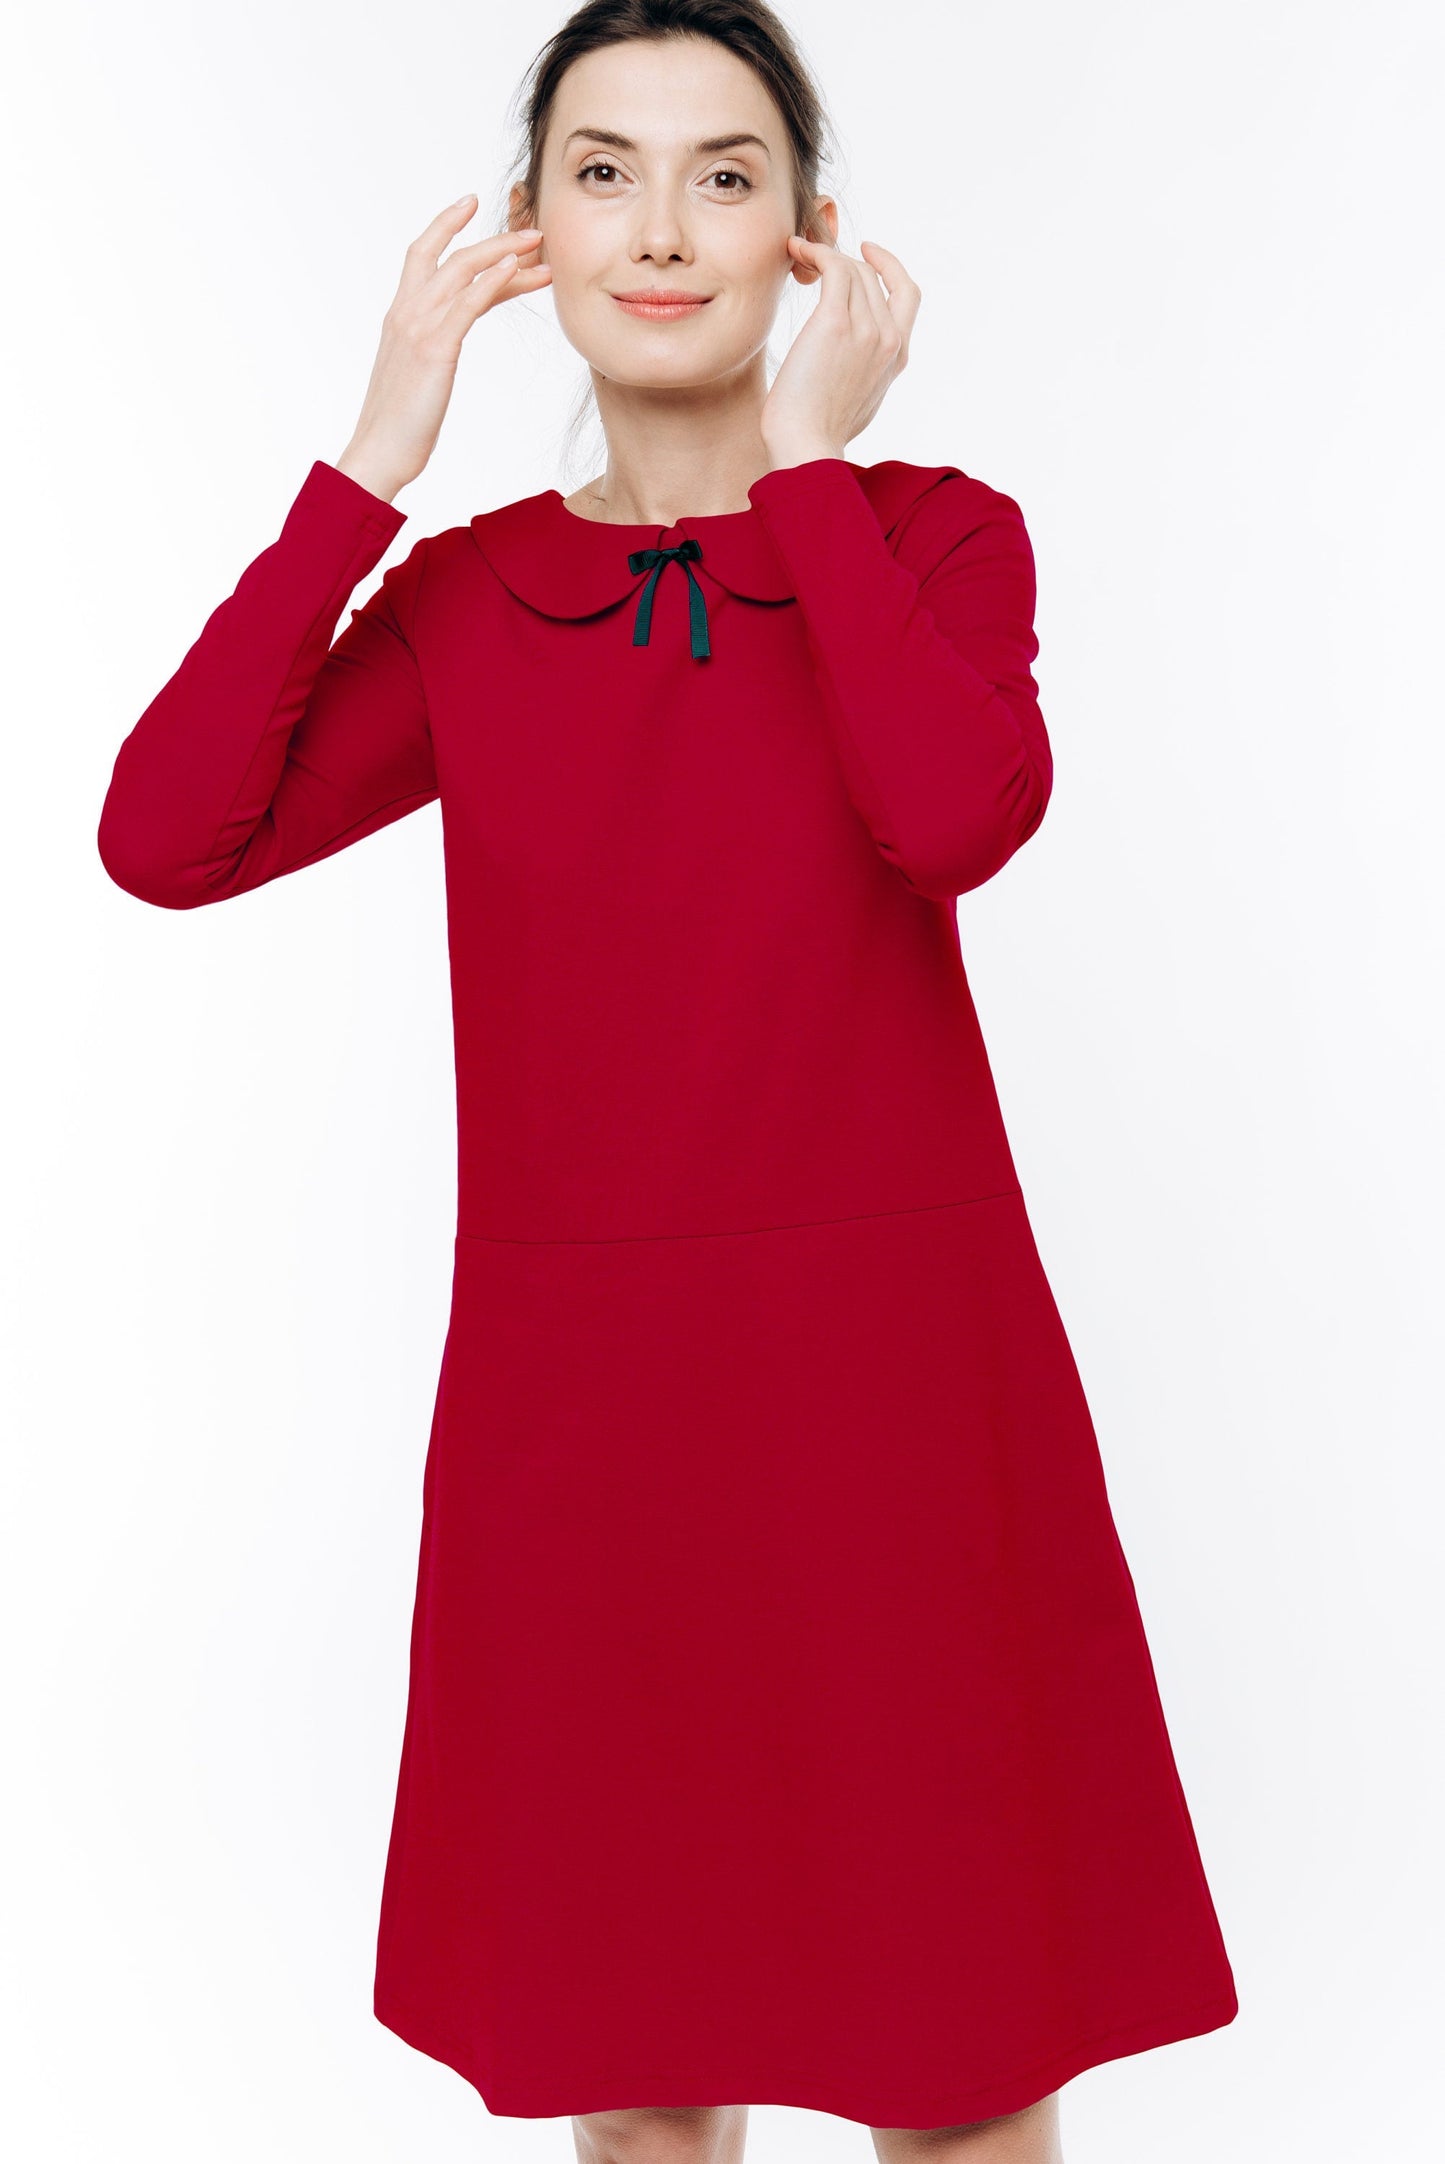 LeMuse raudona PARISIAN suknelė